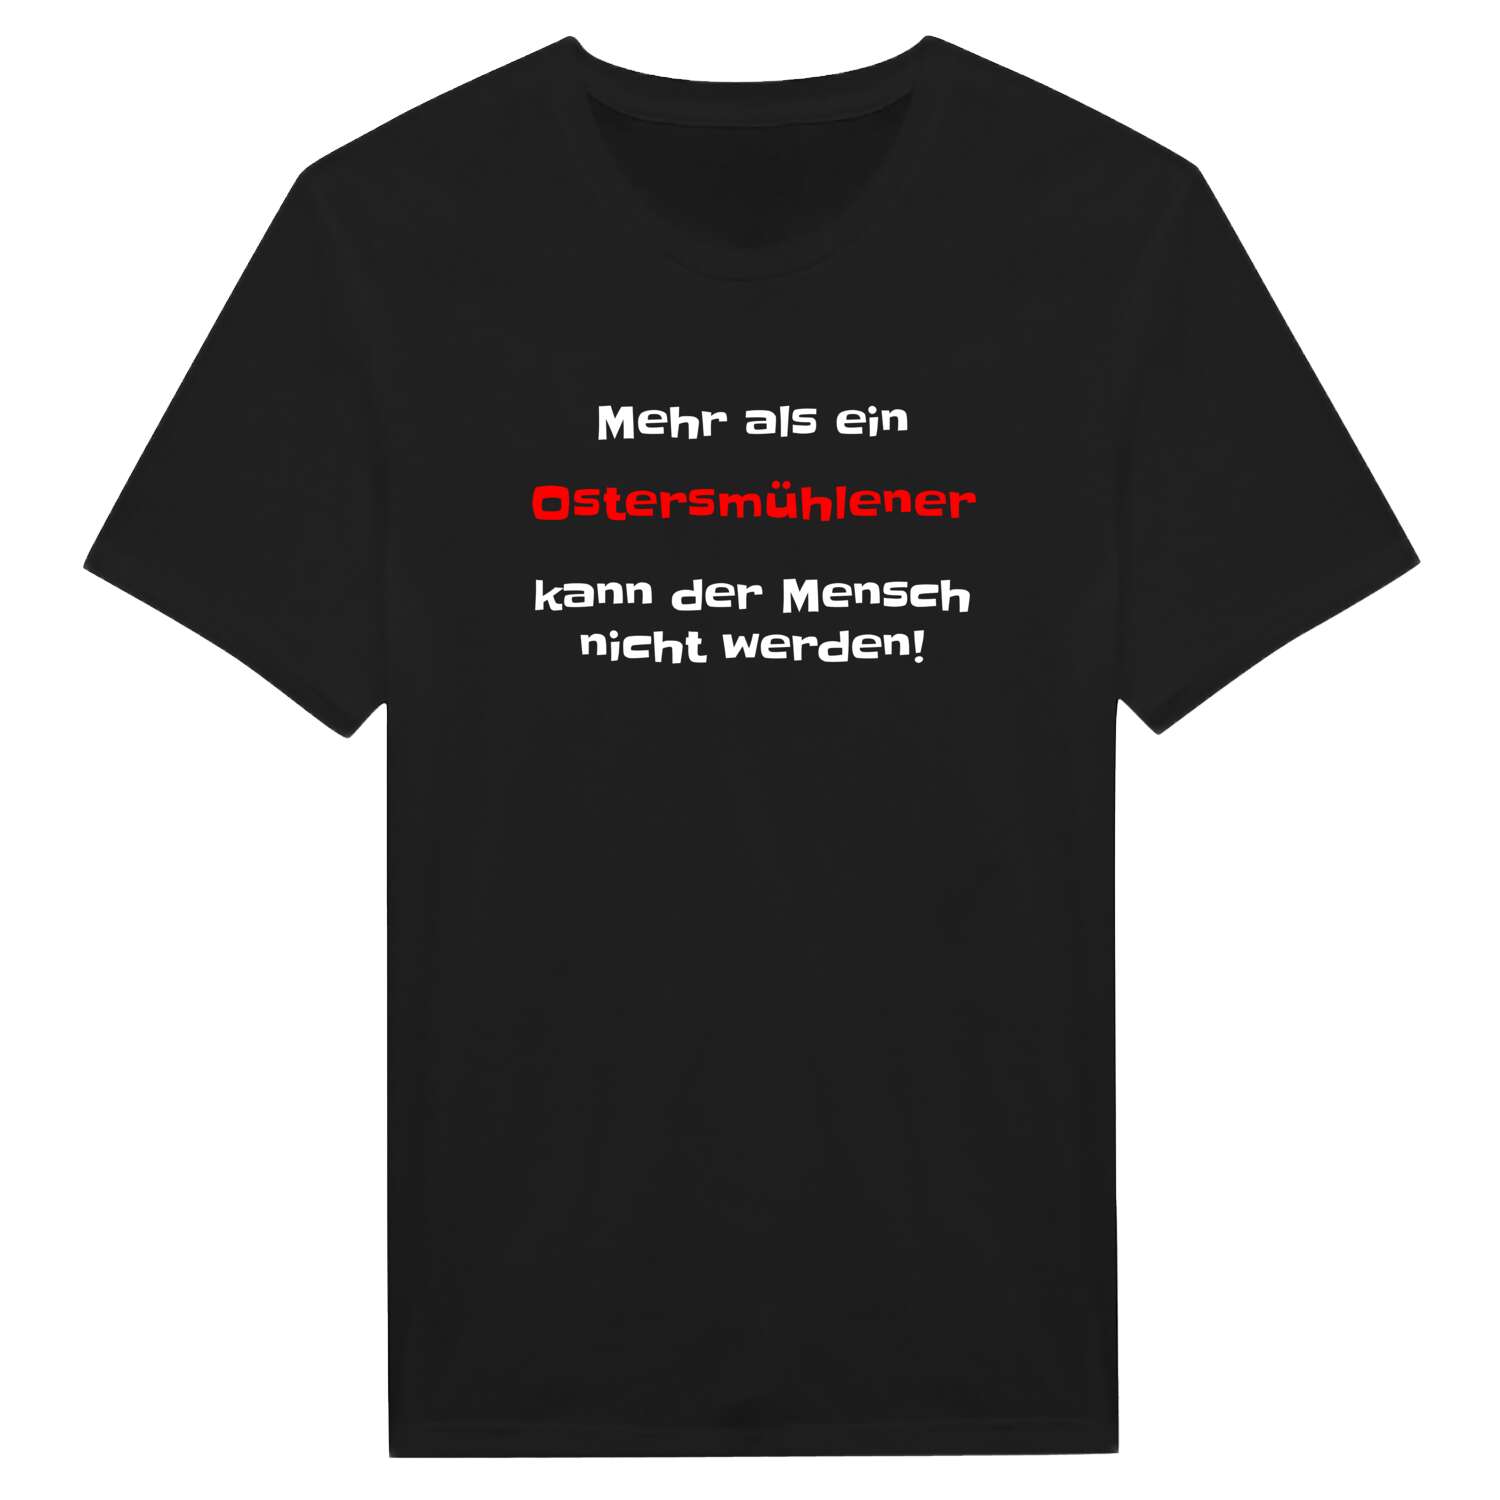 Ostersmühle T-Shirt »Mehr als ein«